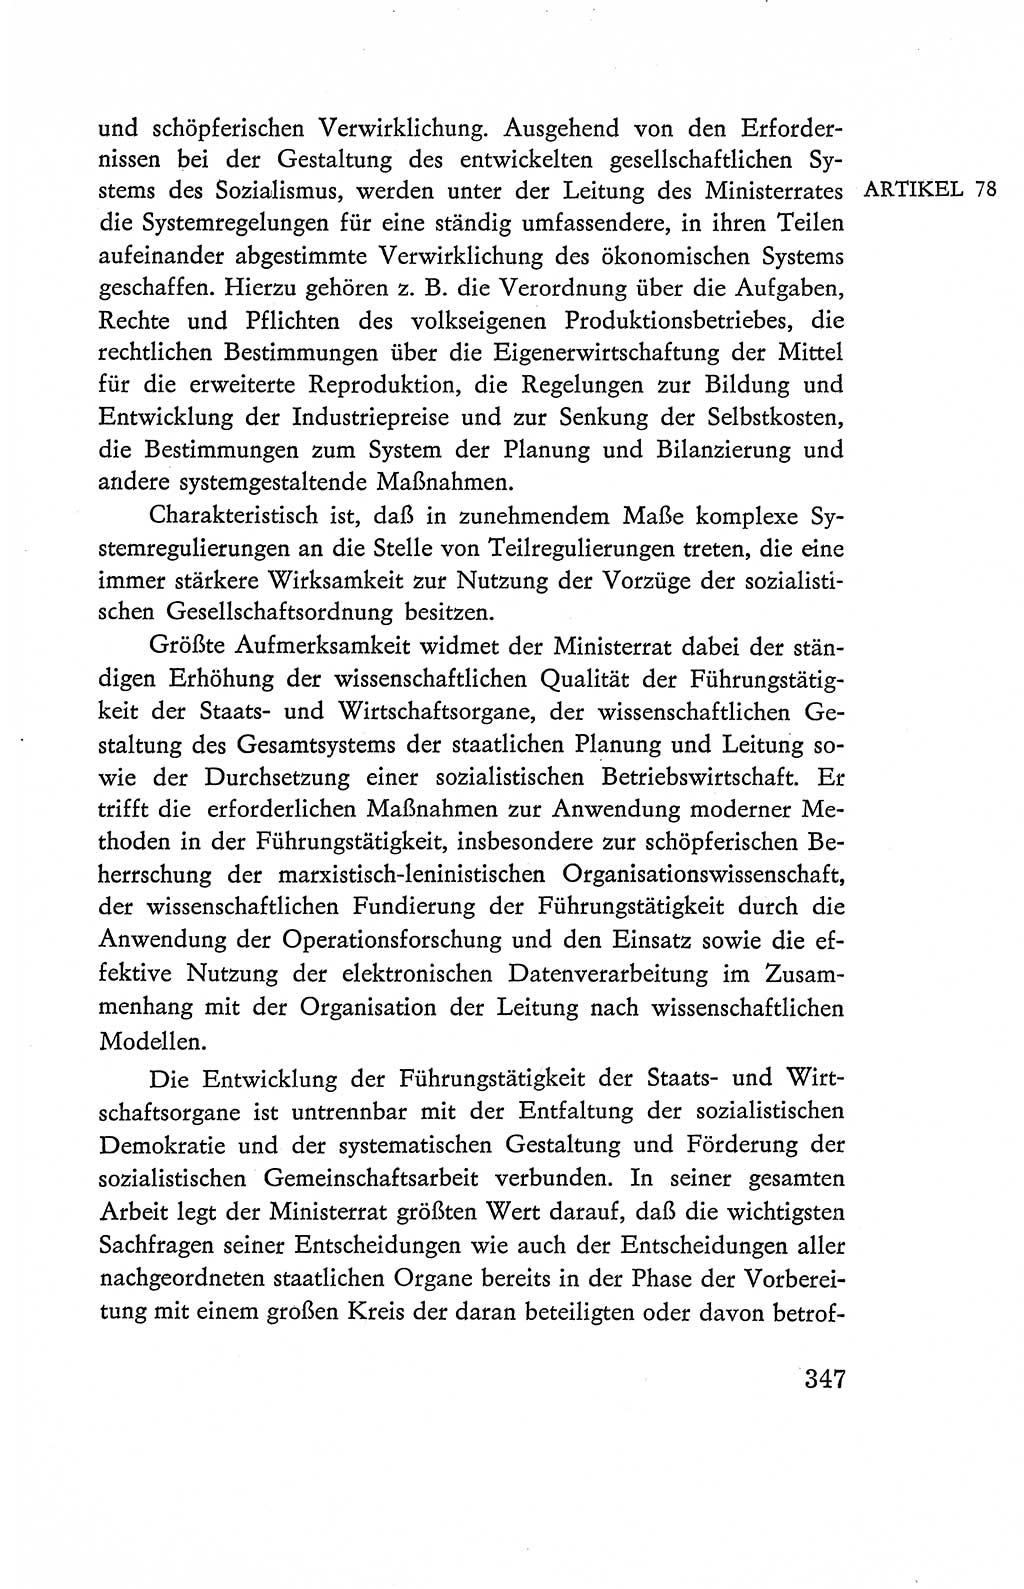 Verfassung der Deutschen Demokratischen Republik (DDR), Dokumente, Kommentar 1969, Band 2, Seite 347 (Verf. DDR Dok. Komm. 1969, Bd. 2, S. 347)